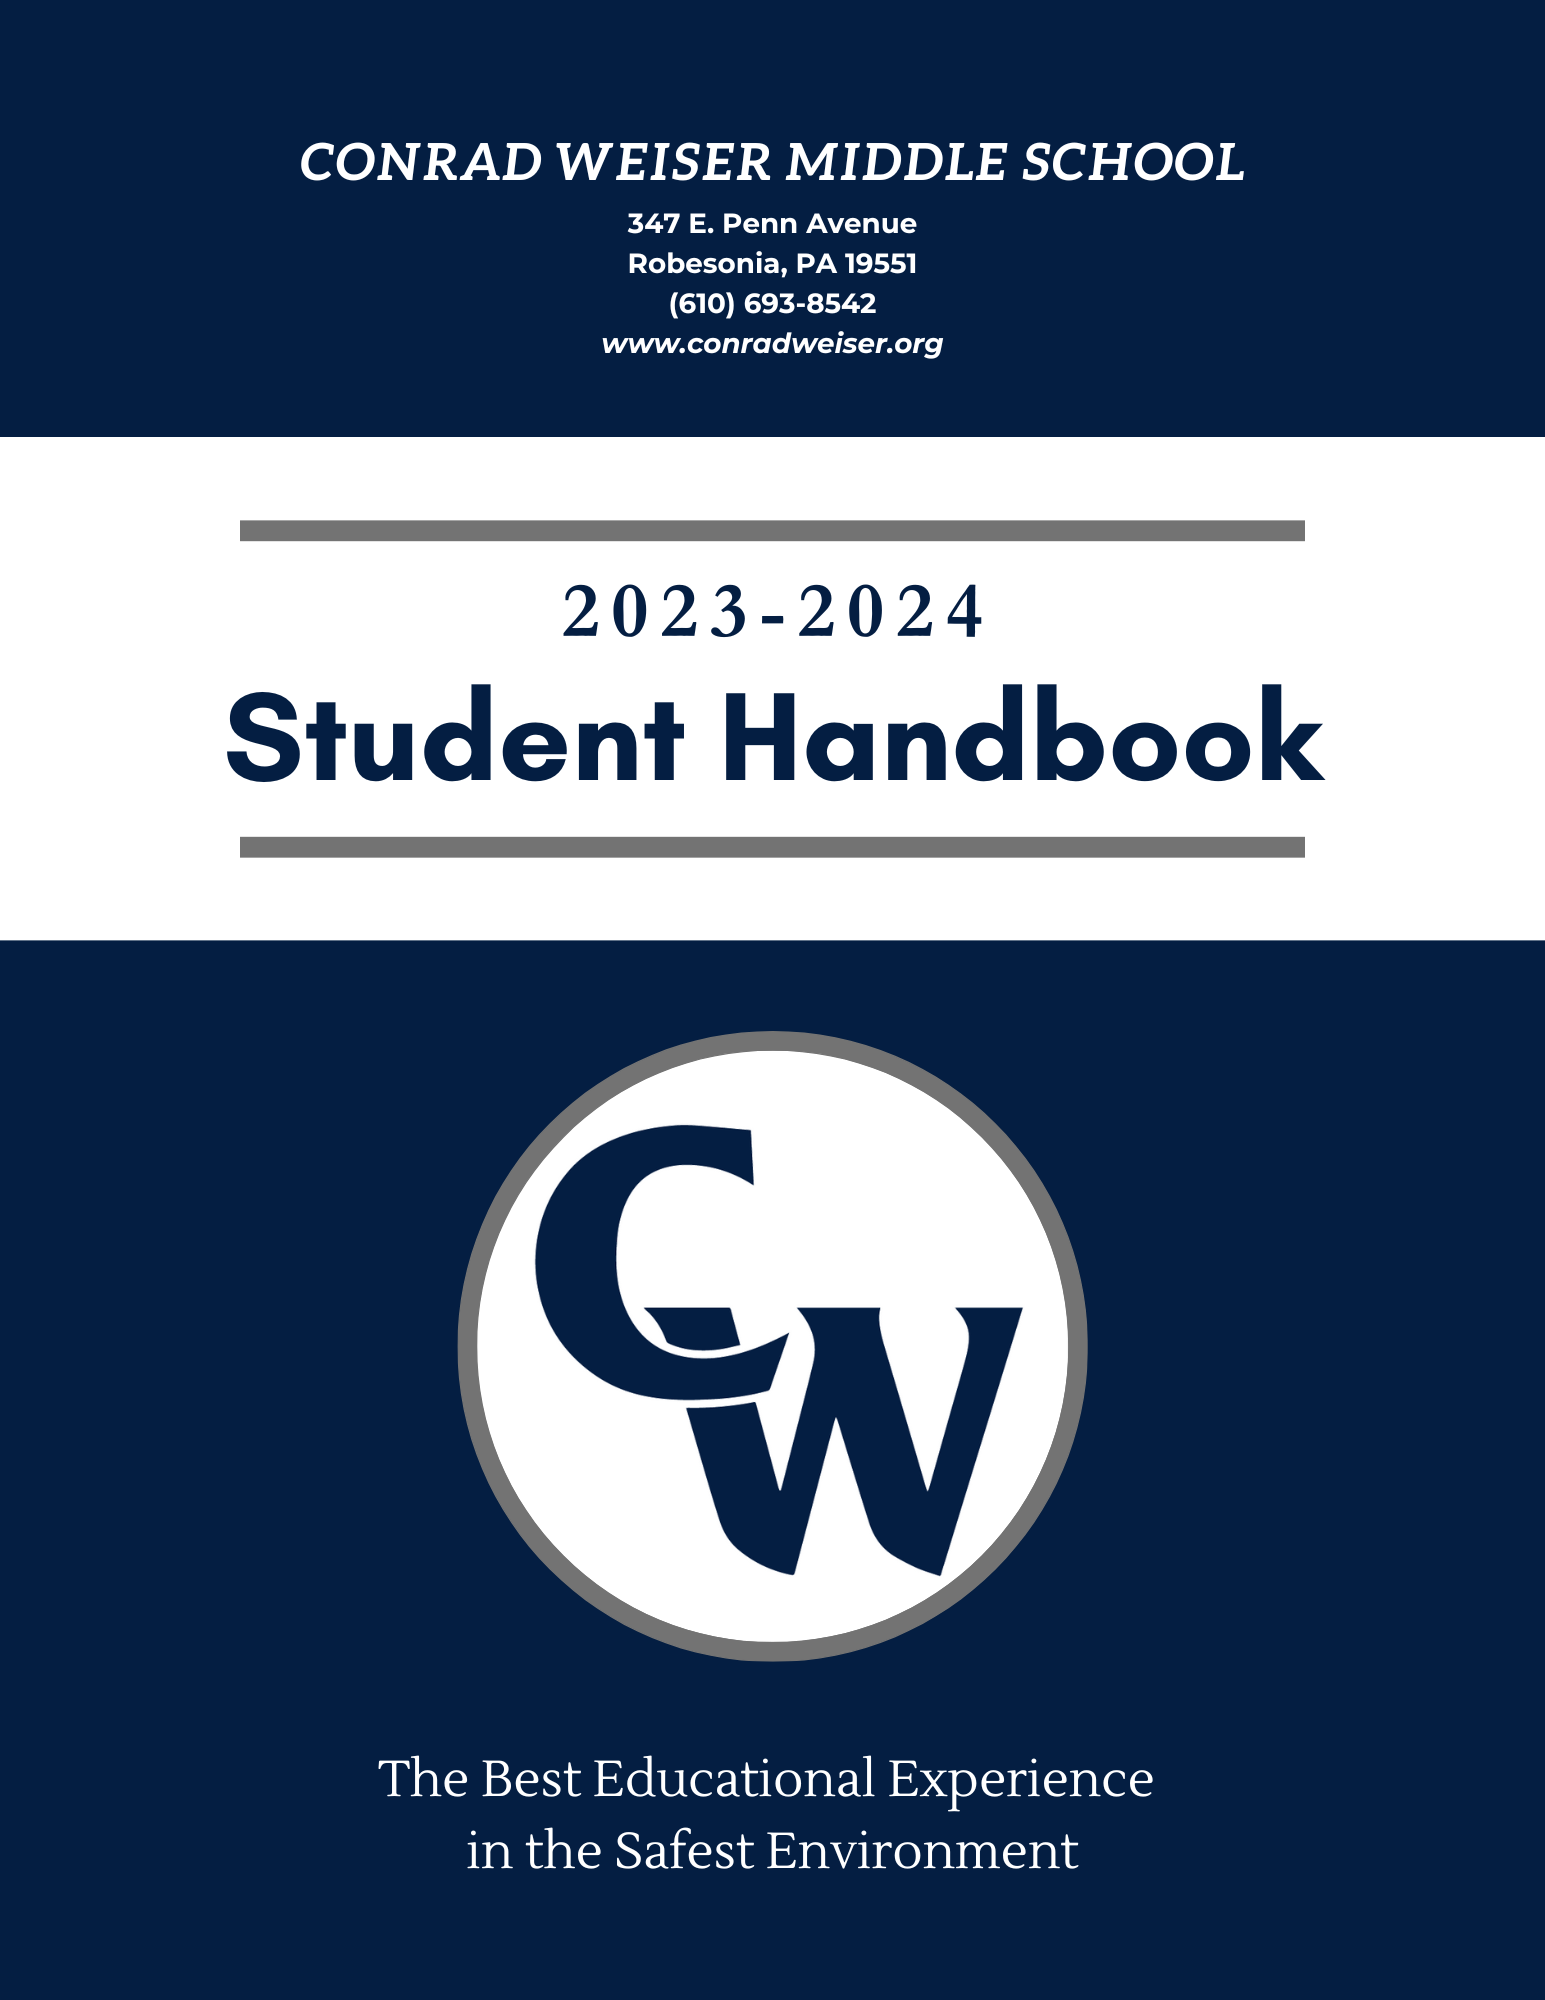 CWMS handbook